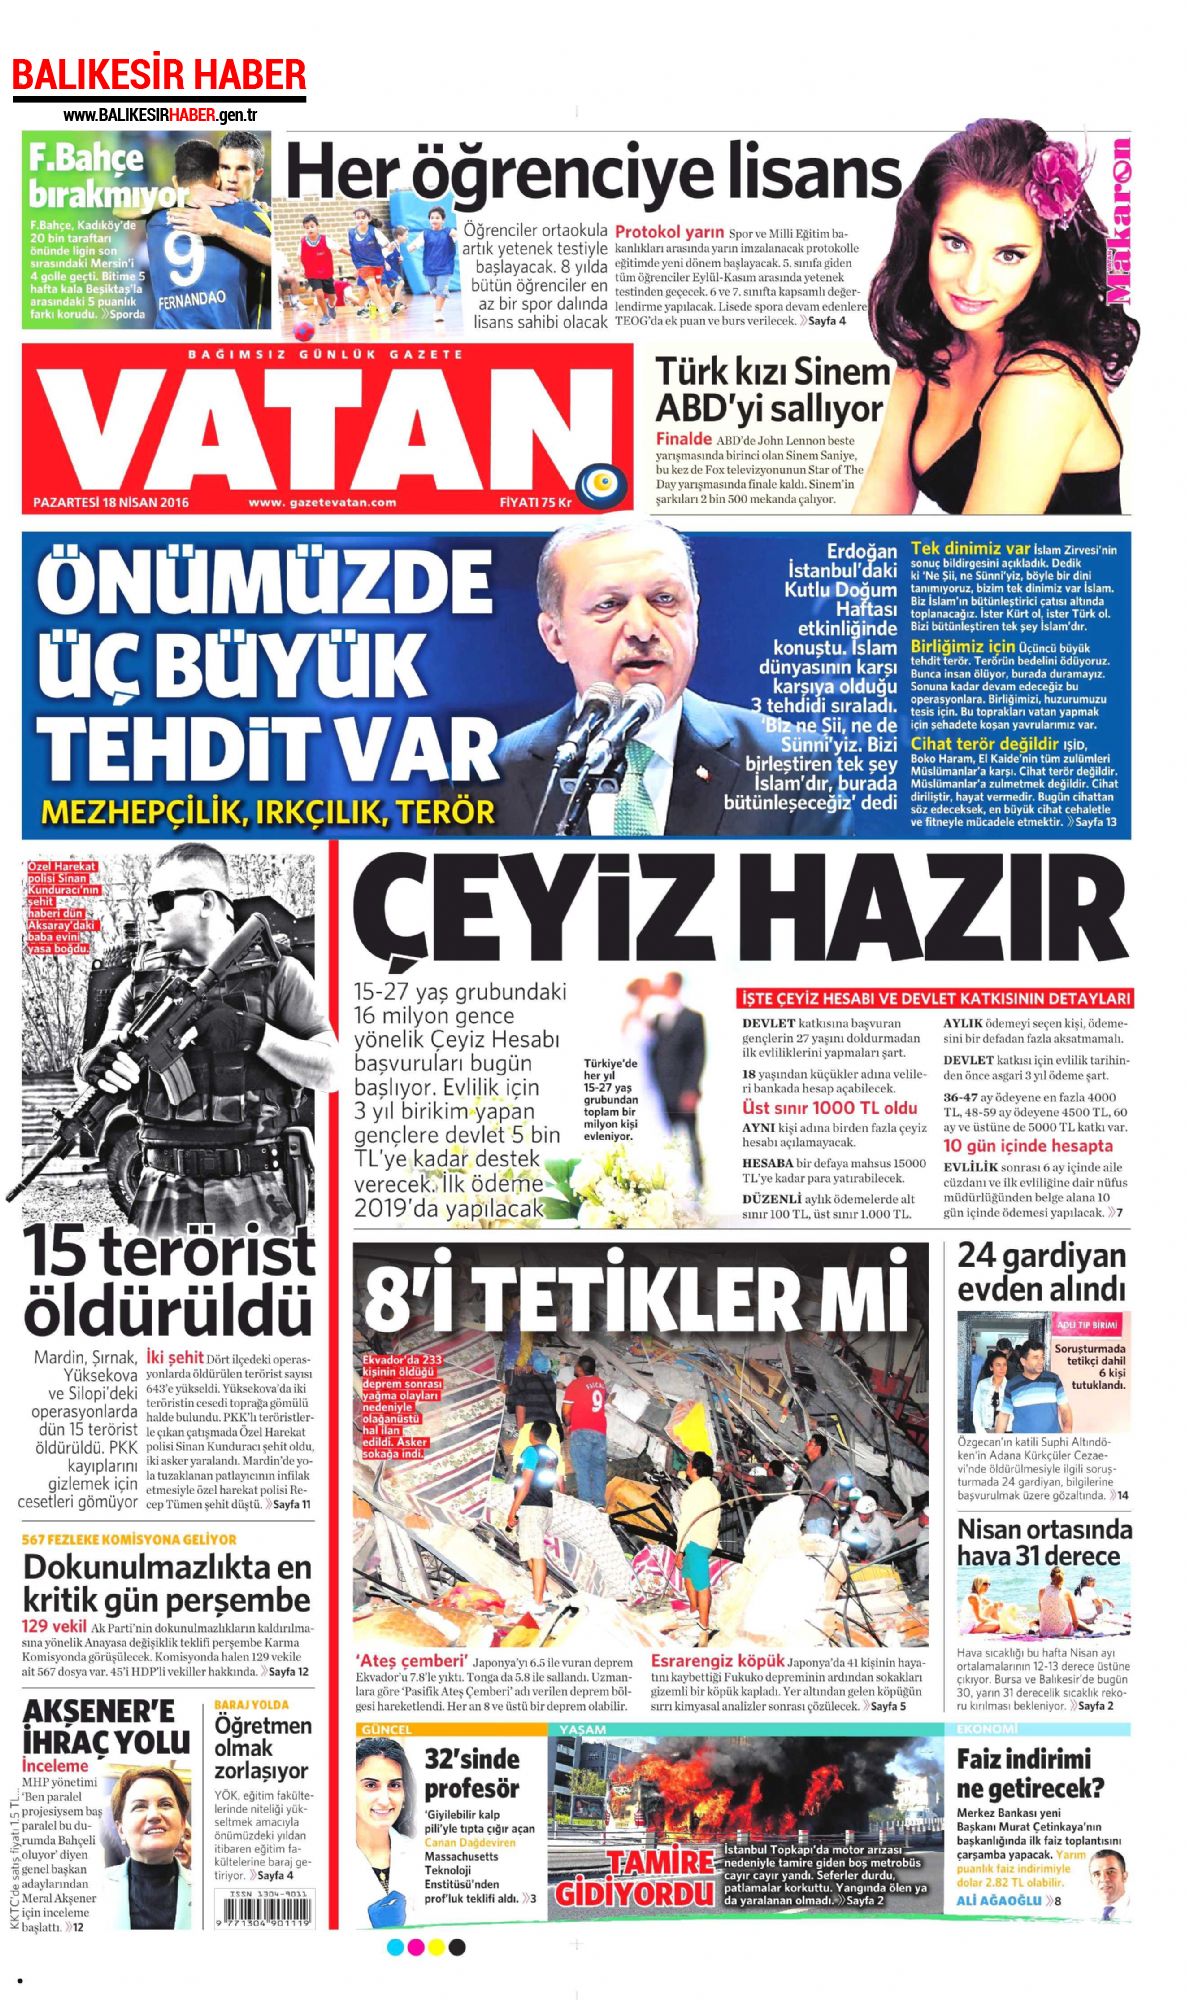 Vatan Gazetesi 18 Nisan 2016 Gazete Manşetleri